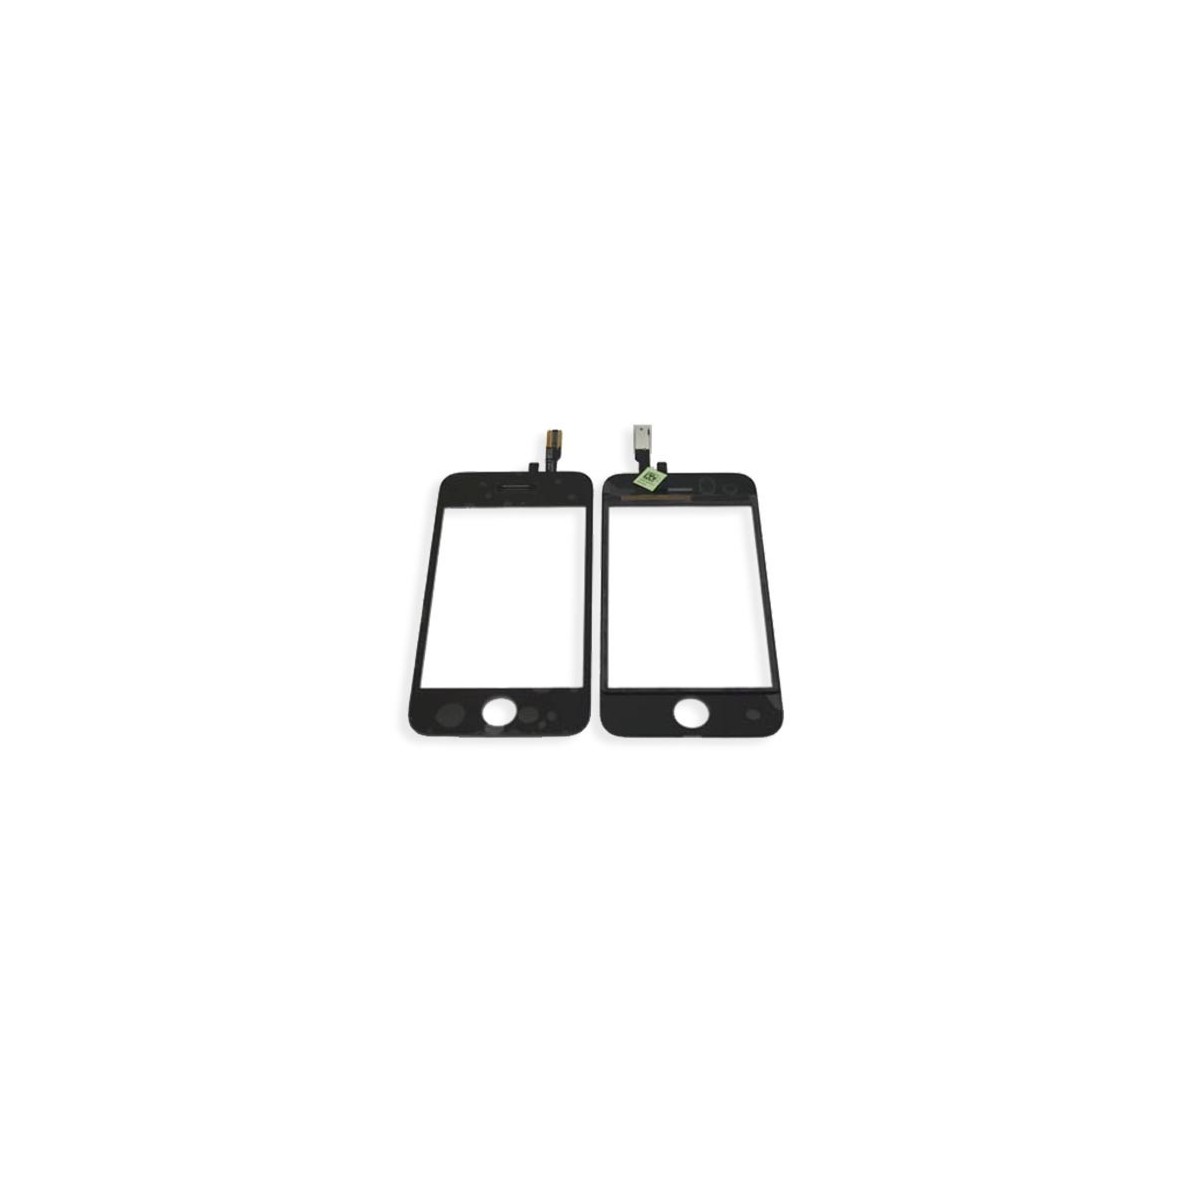 Digitizer | Touchscreen | Touchpanel für iPhone 3GS